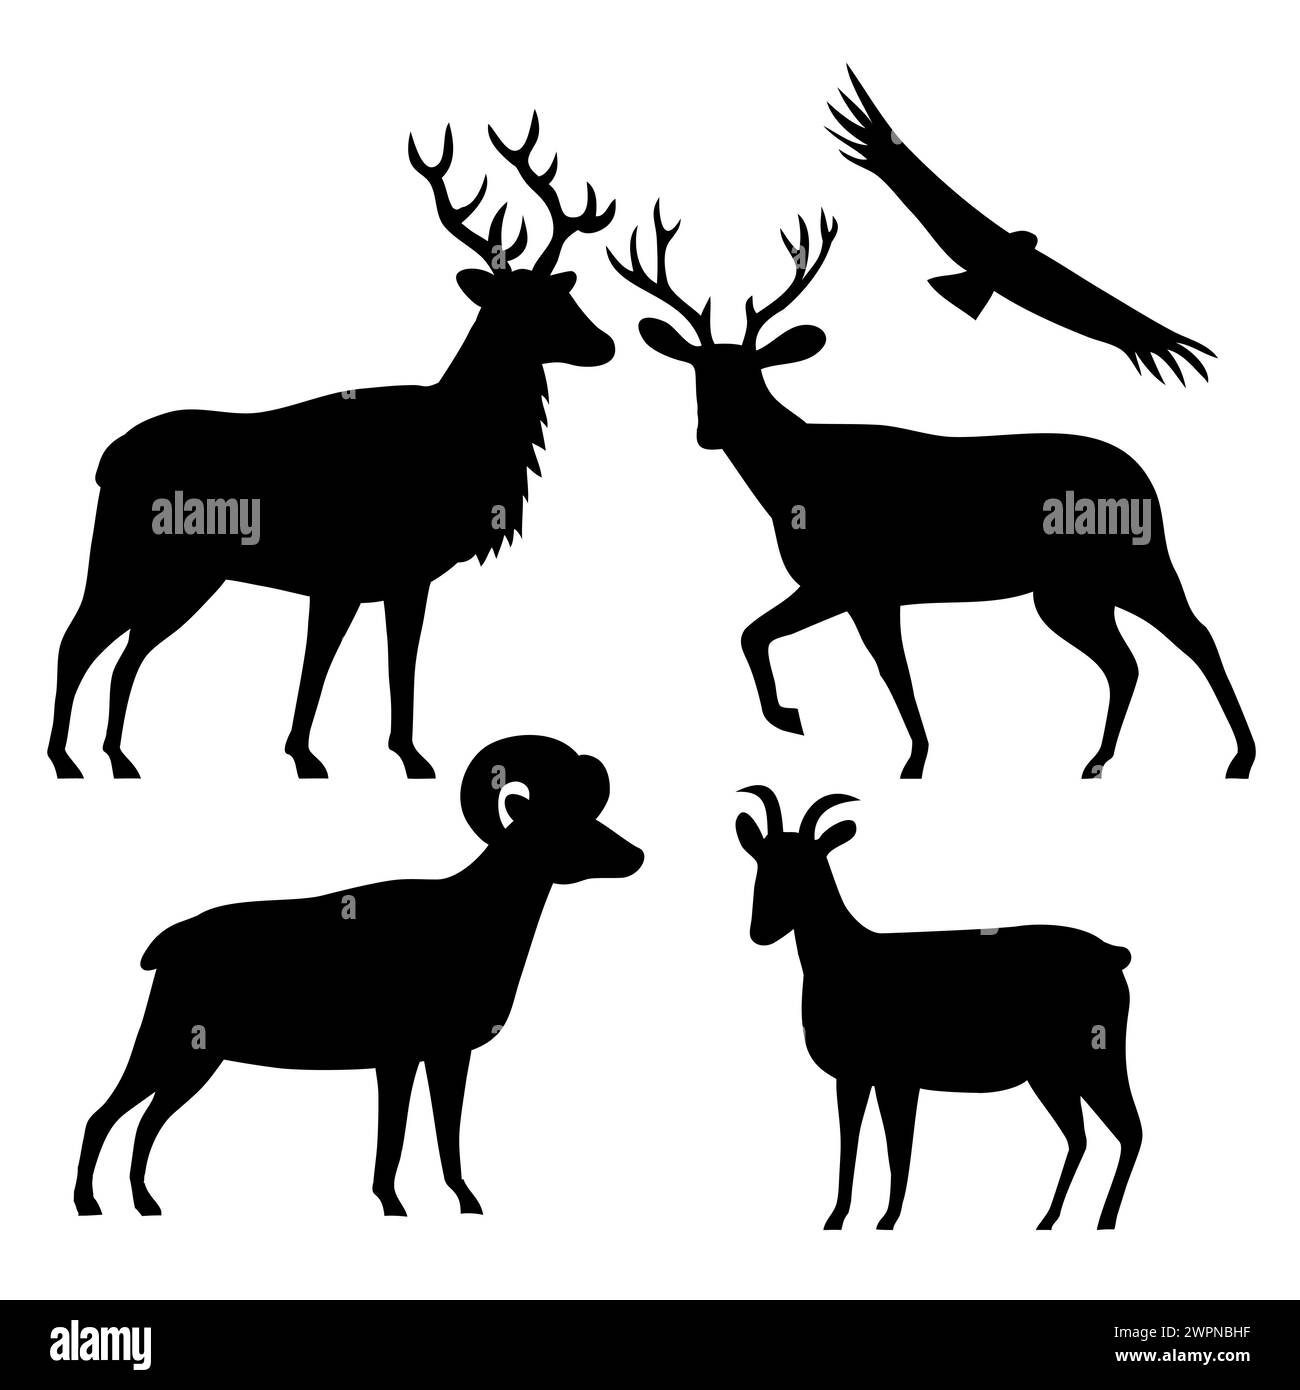 Illustrazione stencil della silhouette della fauna selvatica americana di alci o wapiti, cervi muli, pecore delle Montagne Rocciose maschili e femminili e condor della California sull'isolato Foto Stock